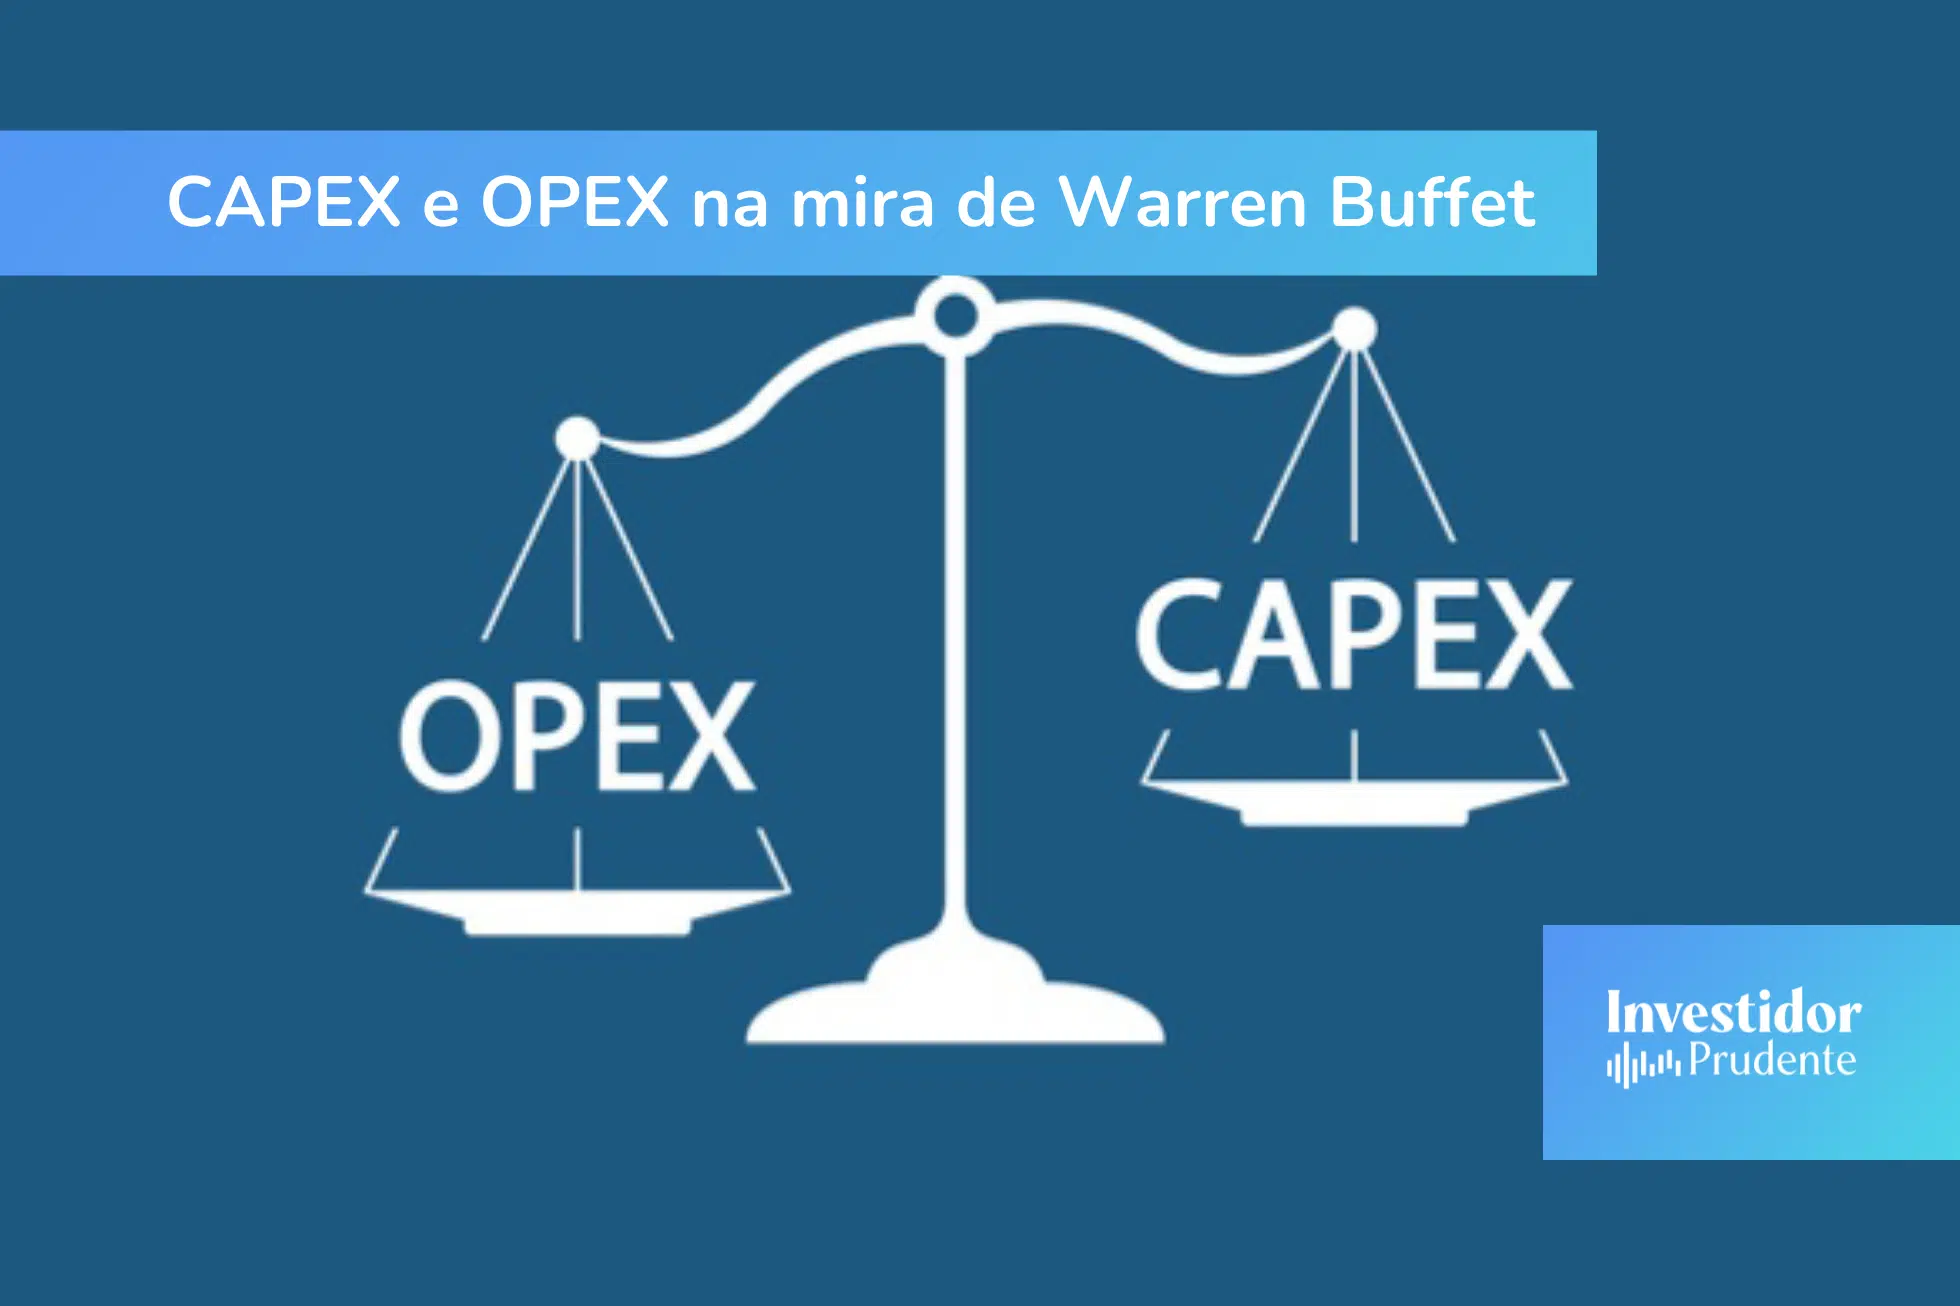 Capex e Opex - o que são e como fazer os cálculos